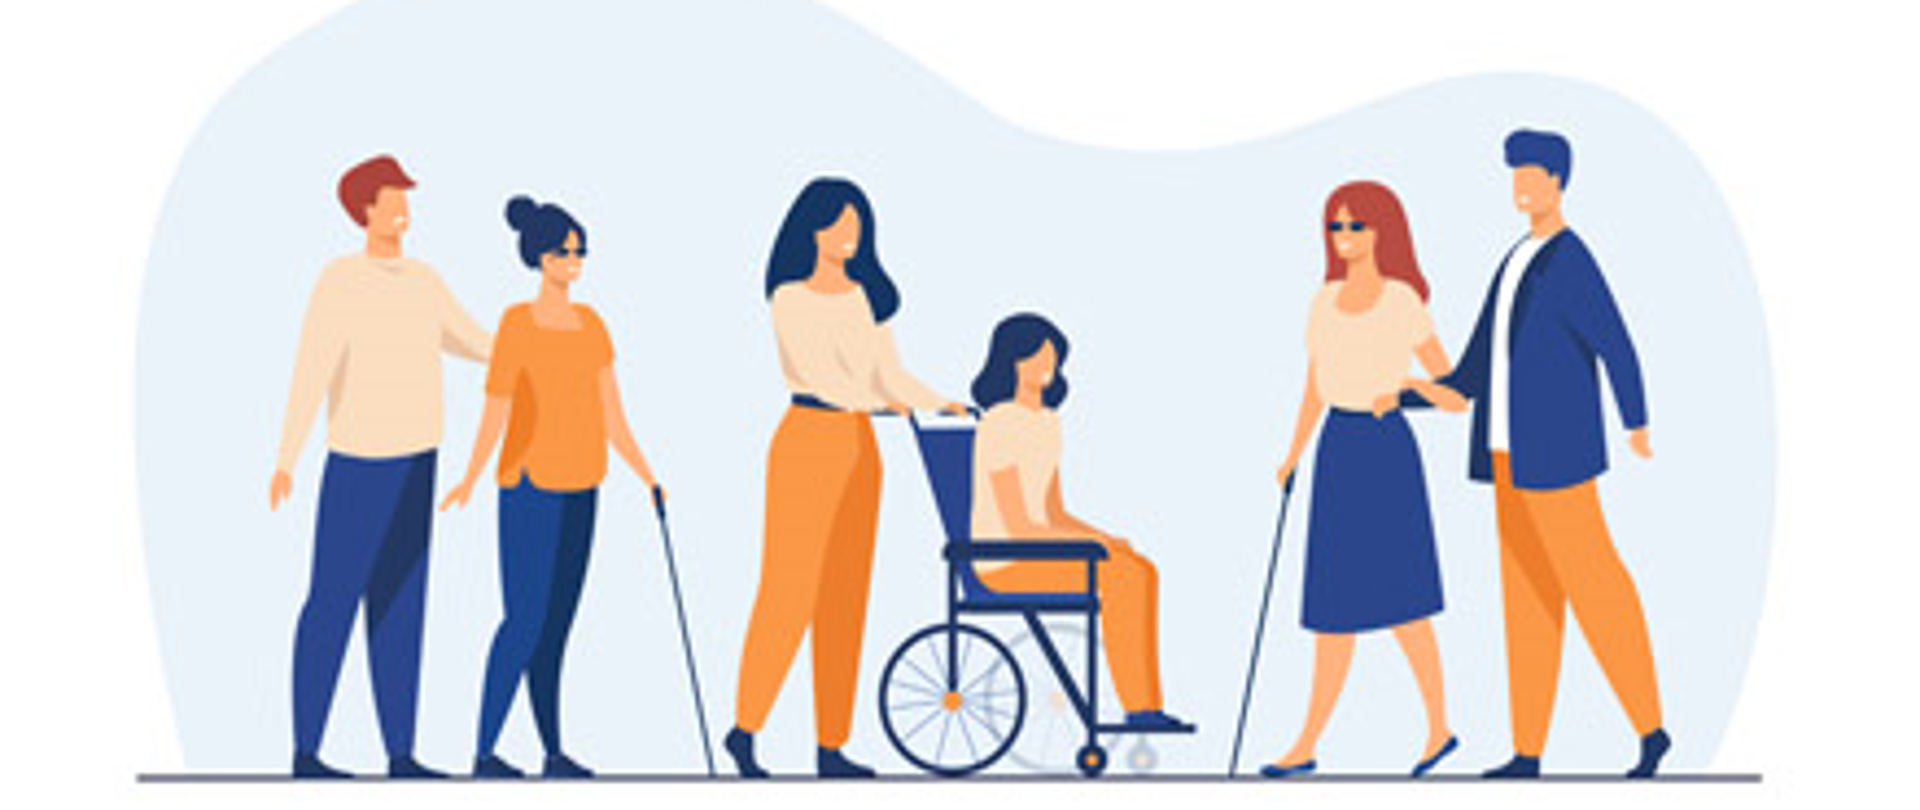 Na grafice widać osoby niepełnosprawne wraz z opiekunami. Po lewej niewidoma Pani oraz Pan opiekun. Na środku Pani na wózku inwalidzkim oraz Pani opiekun. Po prawej widzimy niewidomą Panią oraz Pana opiekuna.